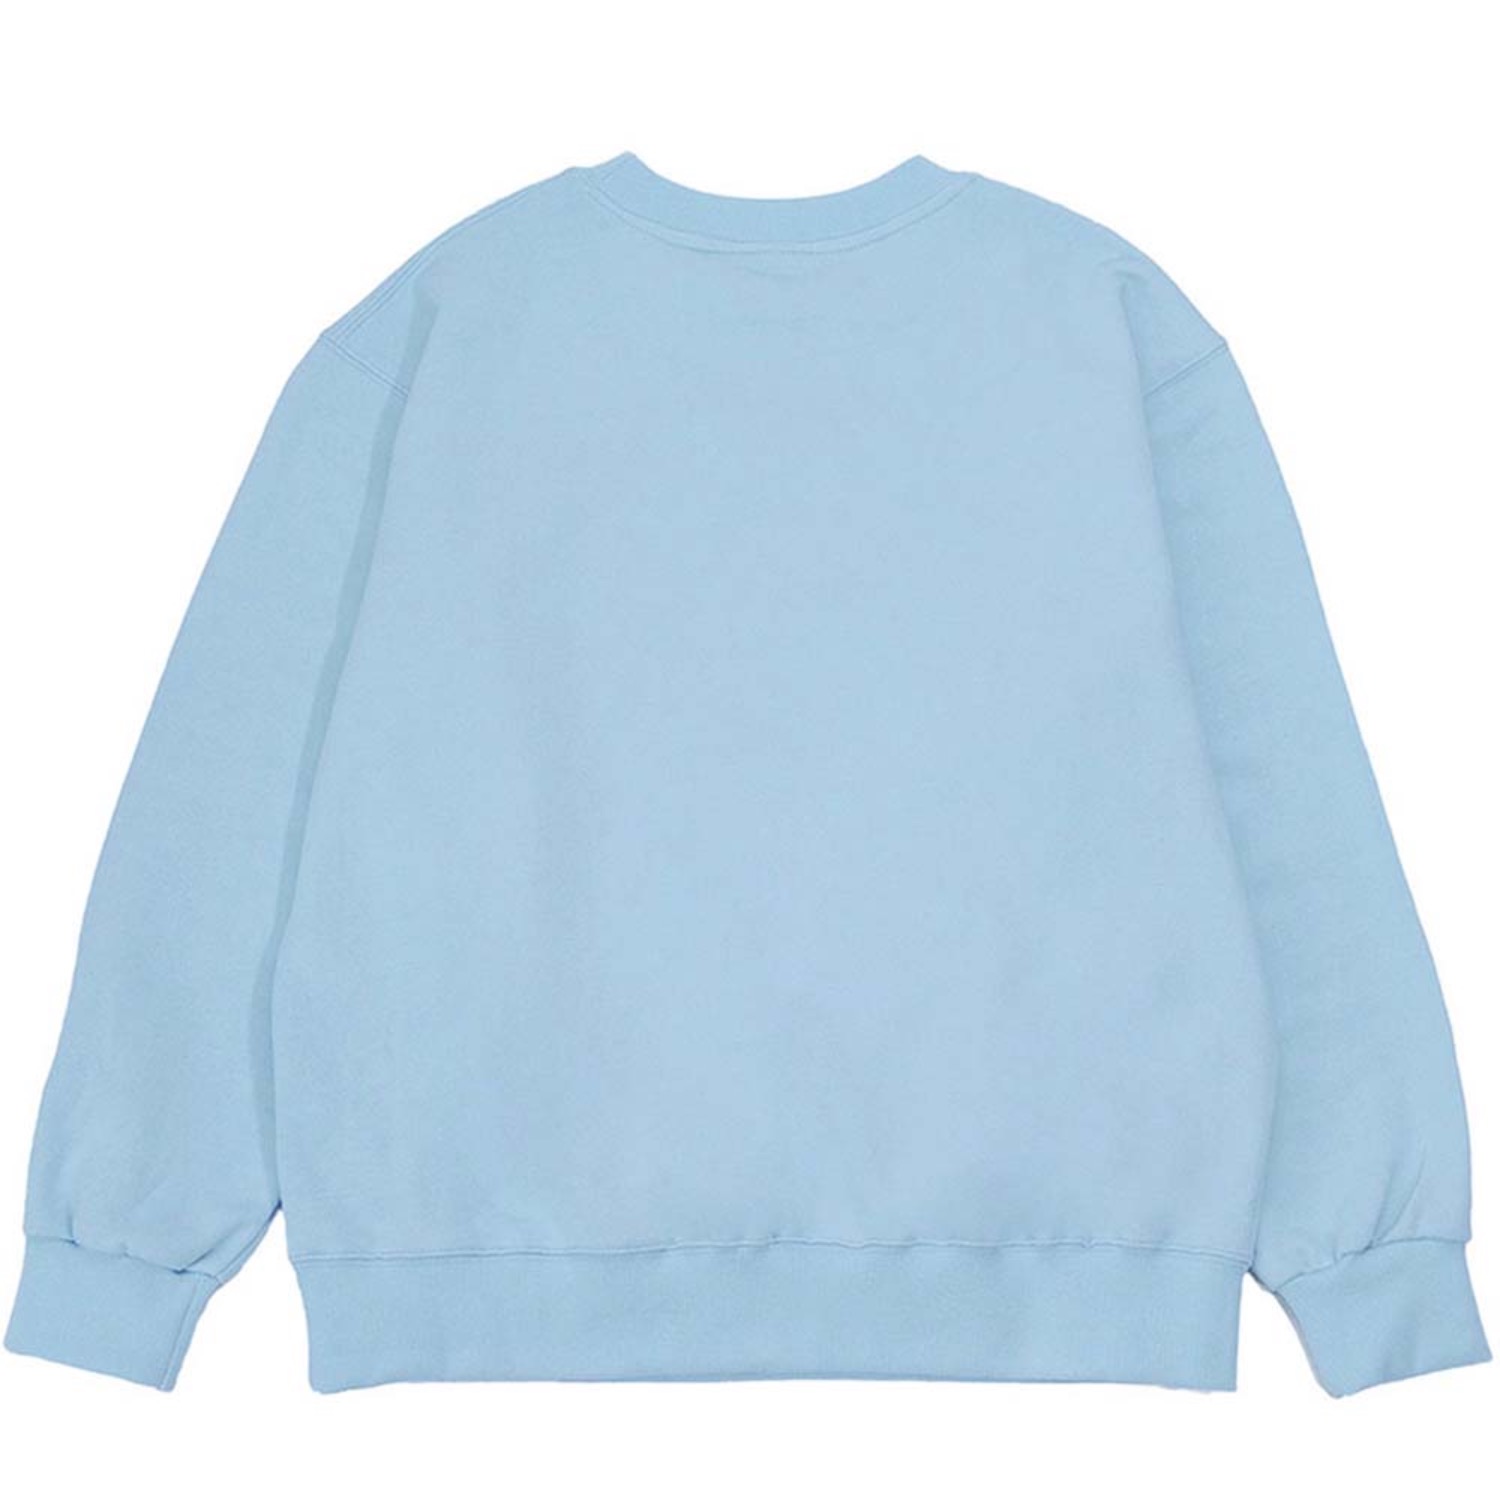 가장 멋진 맨투맨 스카이 블루 The Best Over-fit sweatshirt (Sky Blue)